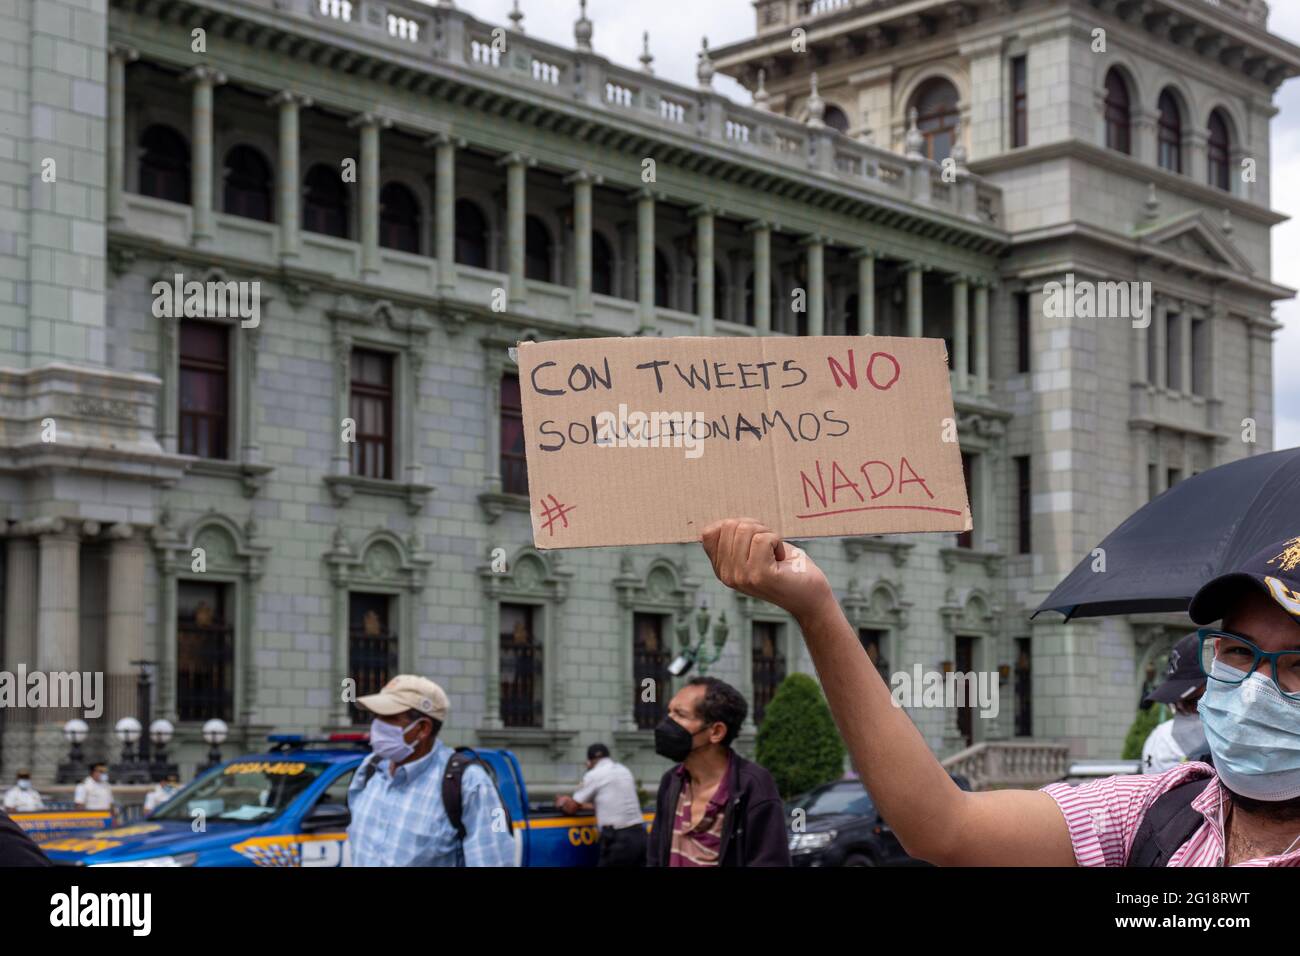 Protesta contra la corrupción del gobierno de guatemala y la persecución de líderes de la sociedad civil. Días antes de la visita del vicepresidente de EE.UU. Kamala Harris Foto de stock